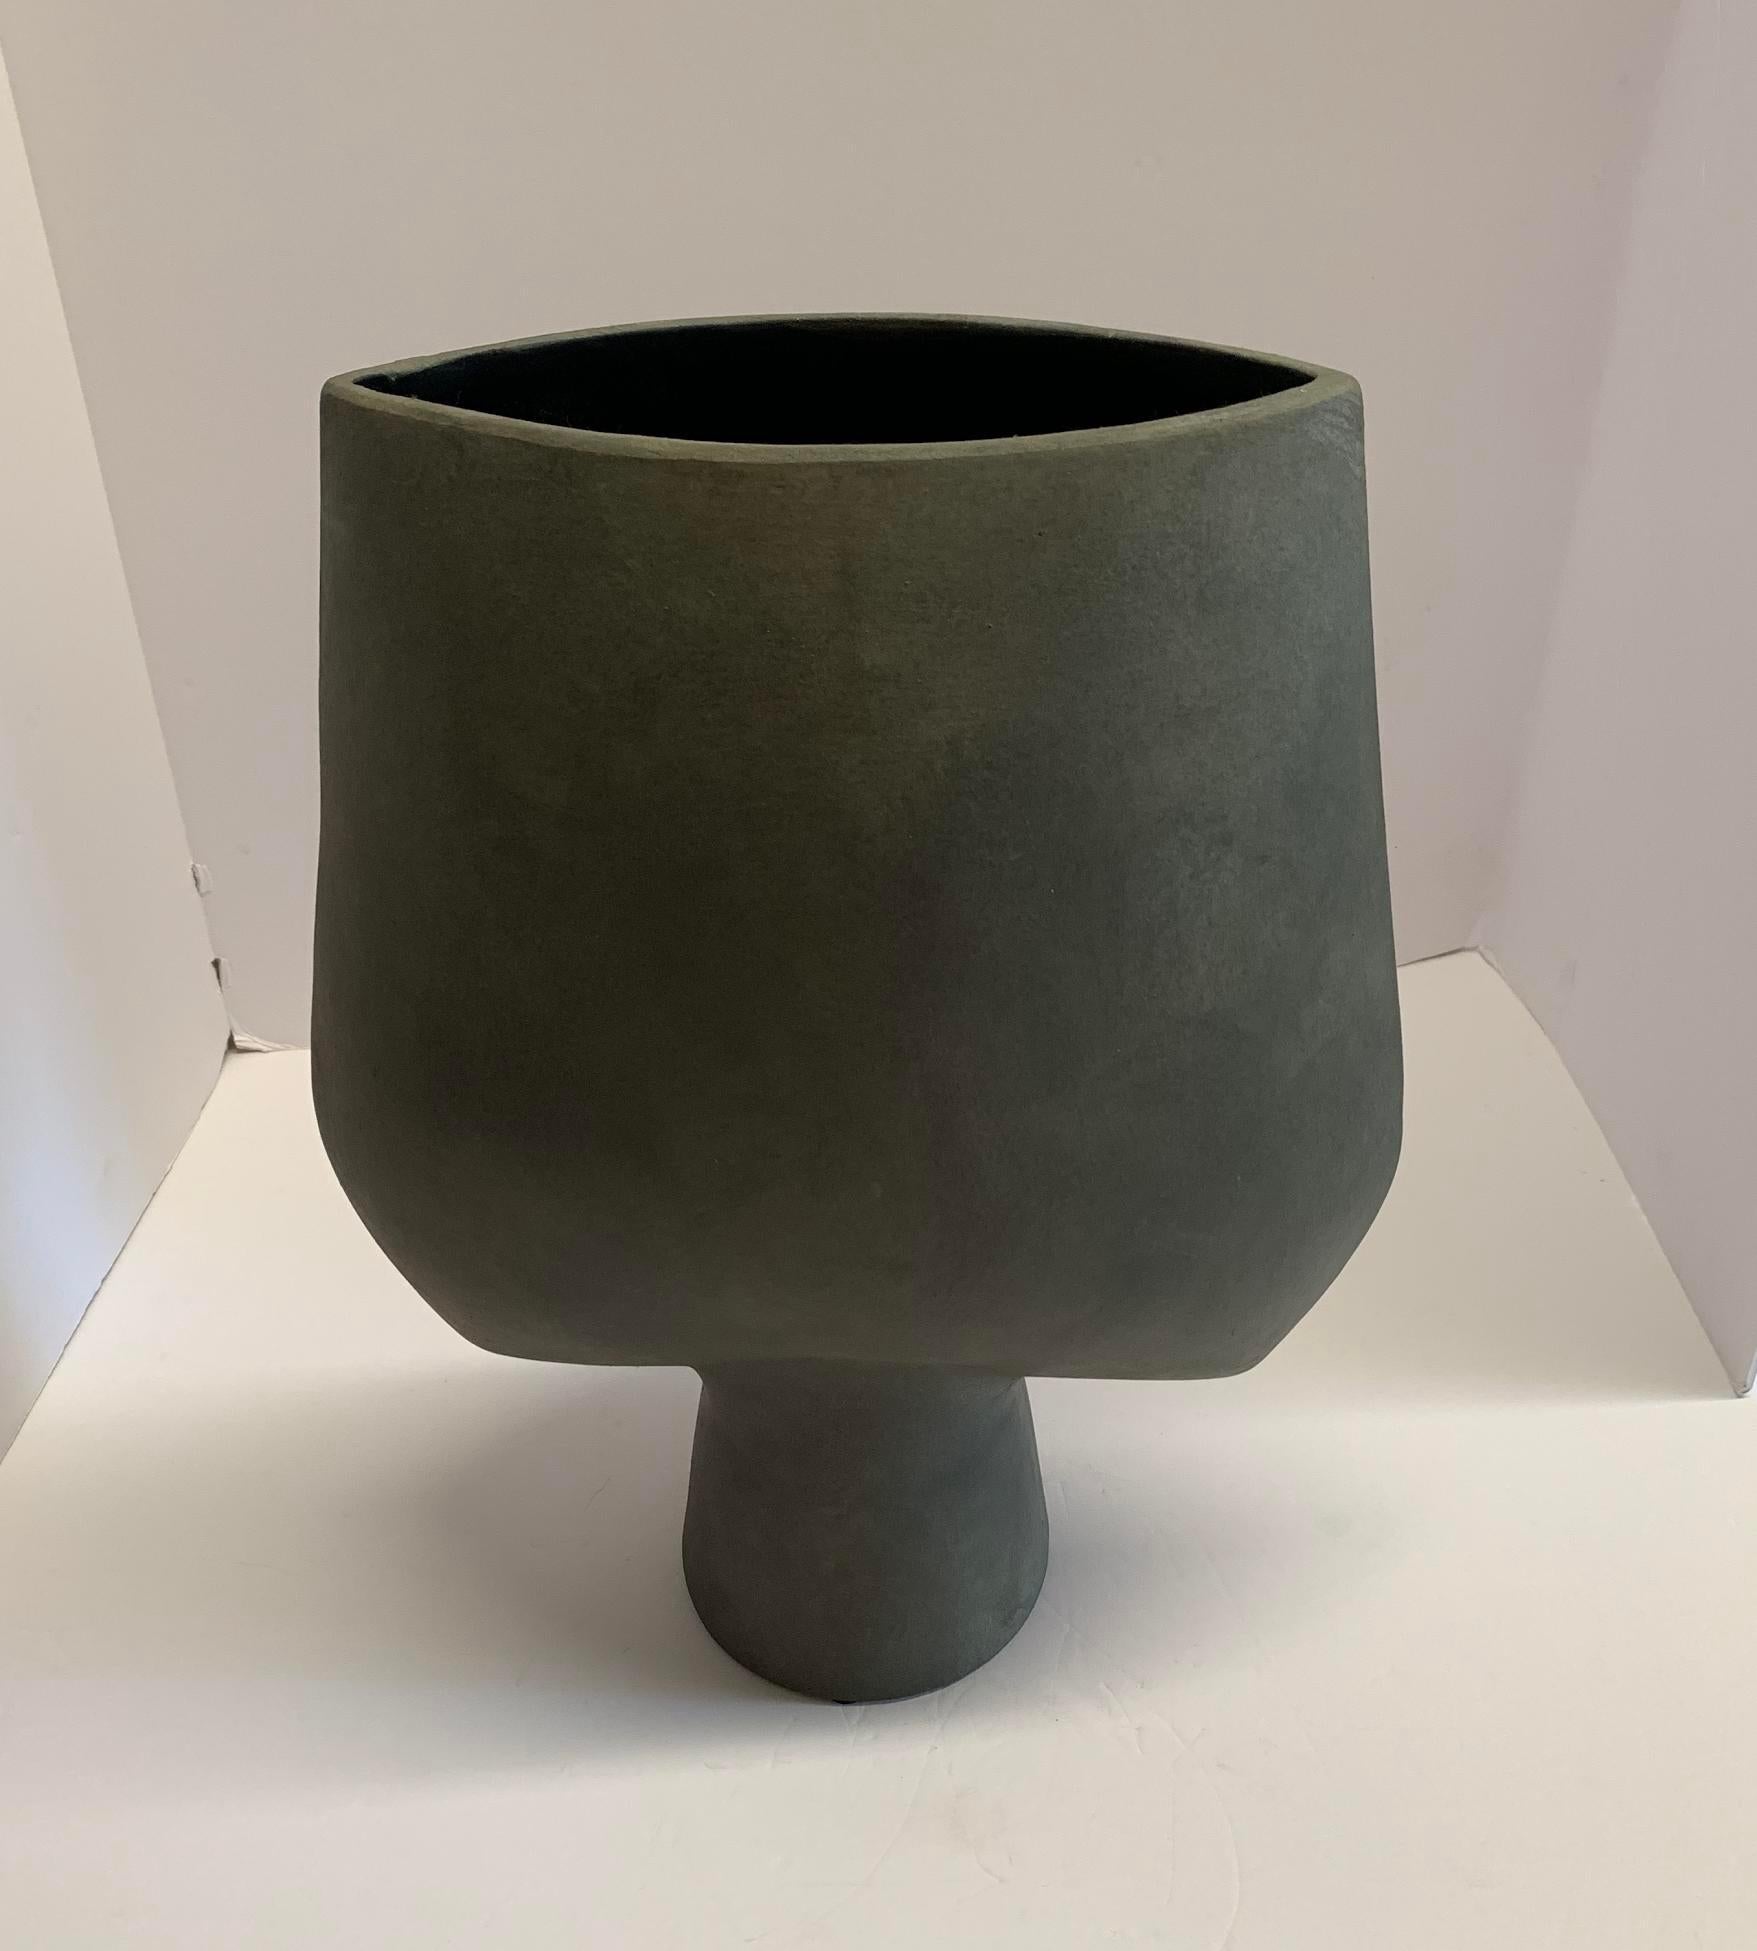 Grand vase en céramique gris mat, au design danois contemporain.
Dessus en forme de flèche et base de forme tubulaire.
Glace grise mate.
L'une des nombreuses formes et tailles de la collection.
Deux disponibles et vendus individuellement.

 